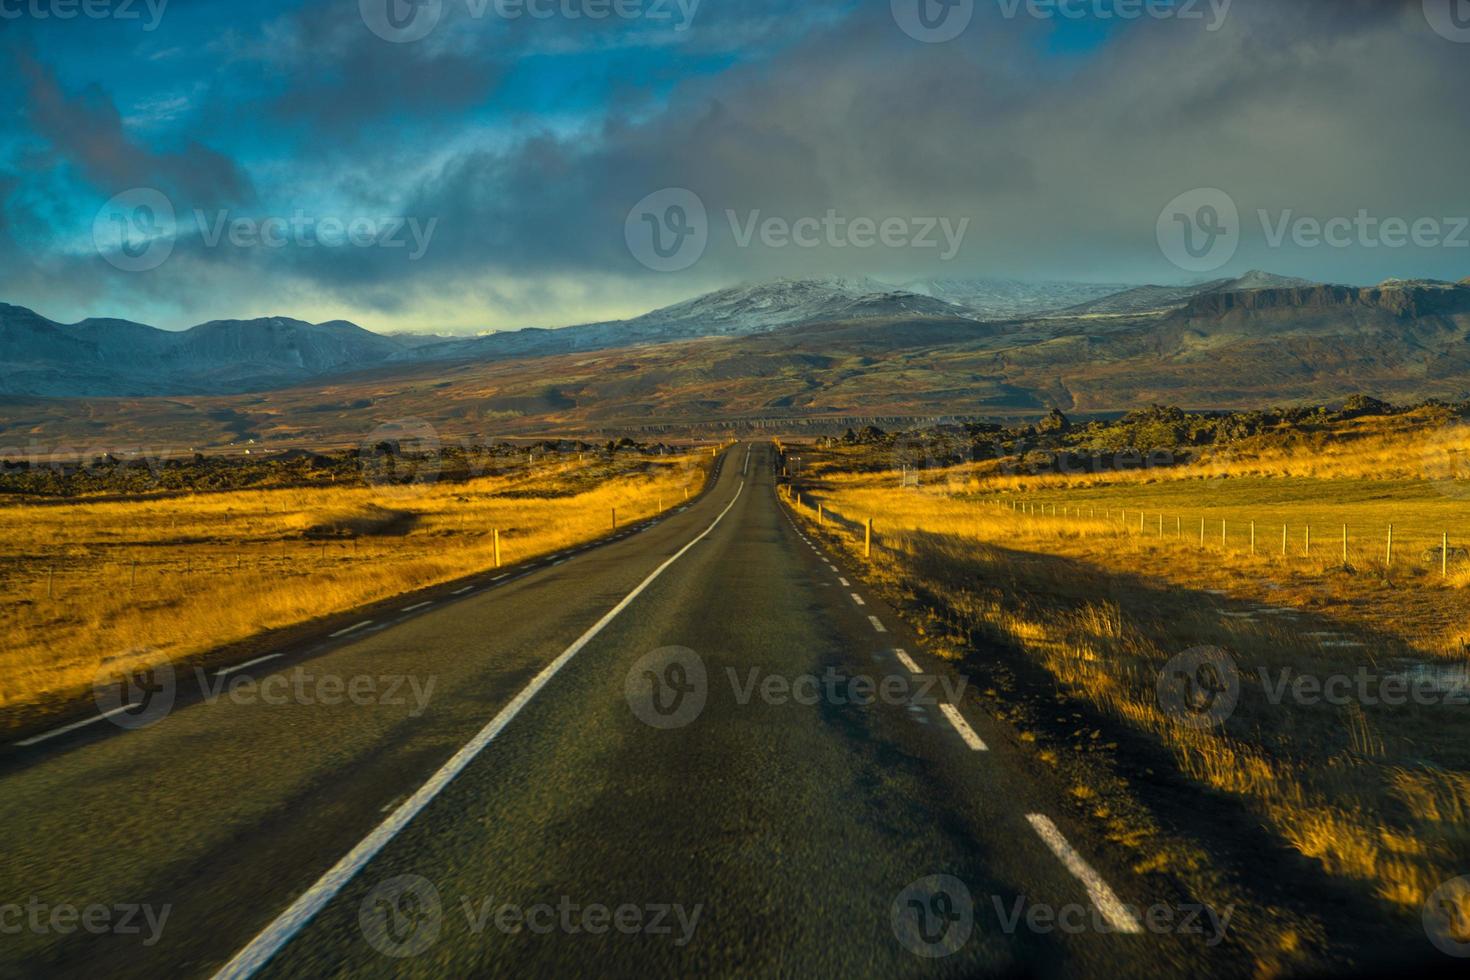 route 1 ou rocade, ou hringvegur, une route nationale qui fait le tour de l'islande et relie la plupart des régions habitées du pays photo